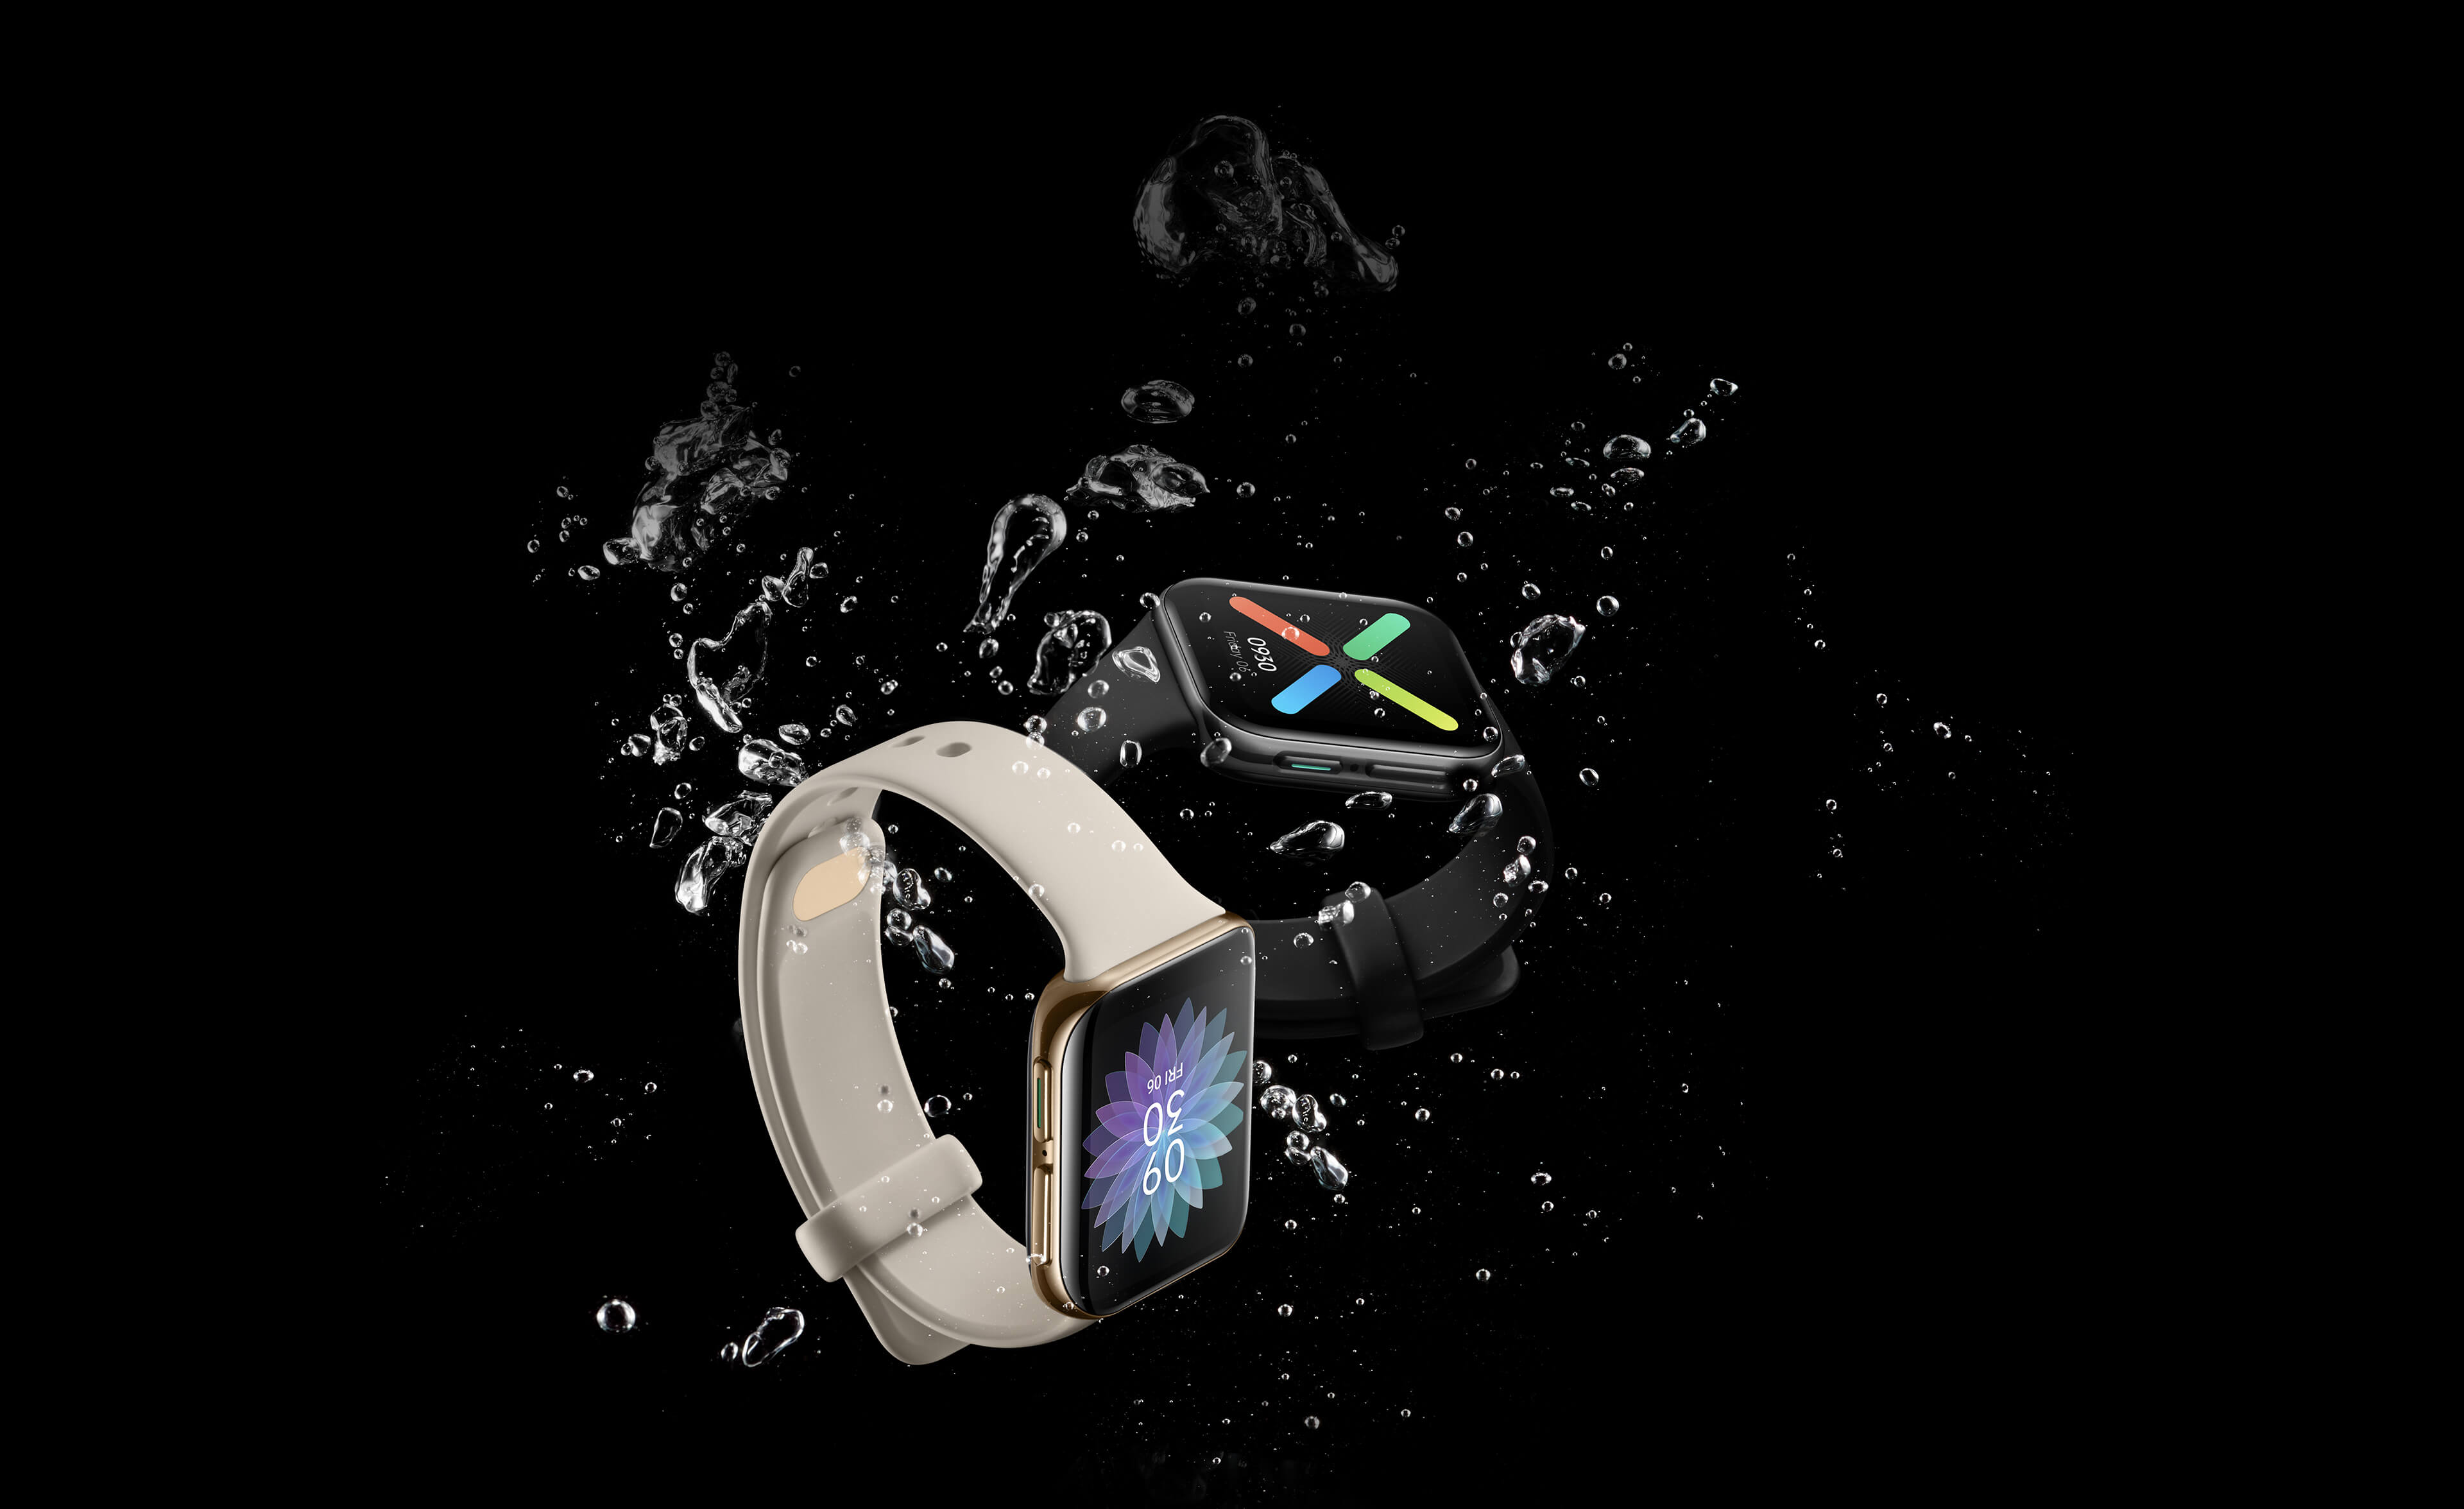 OPPO ha introdotto una nuova versione dello smartwatch Watch Free - con NFC e un po' più costoso